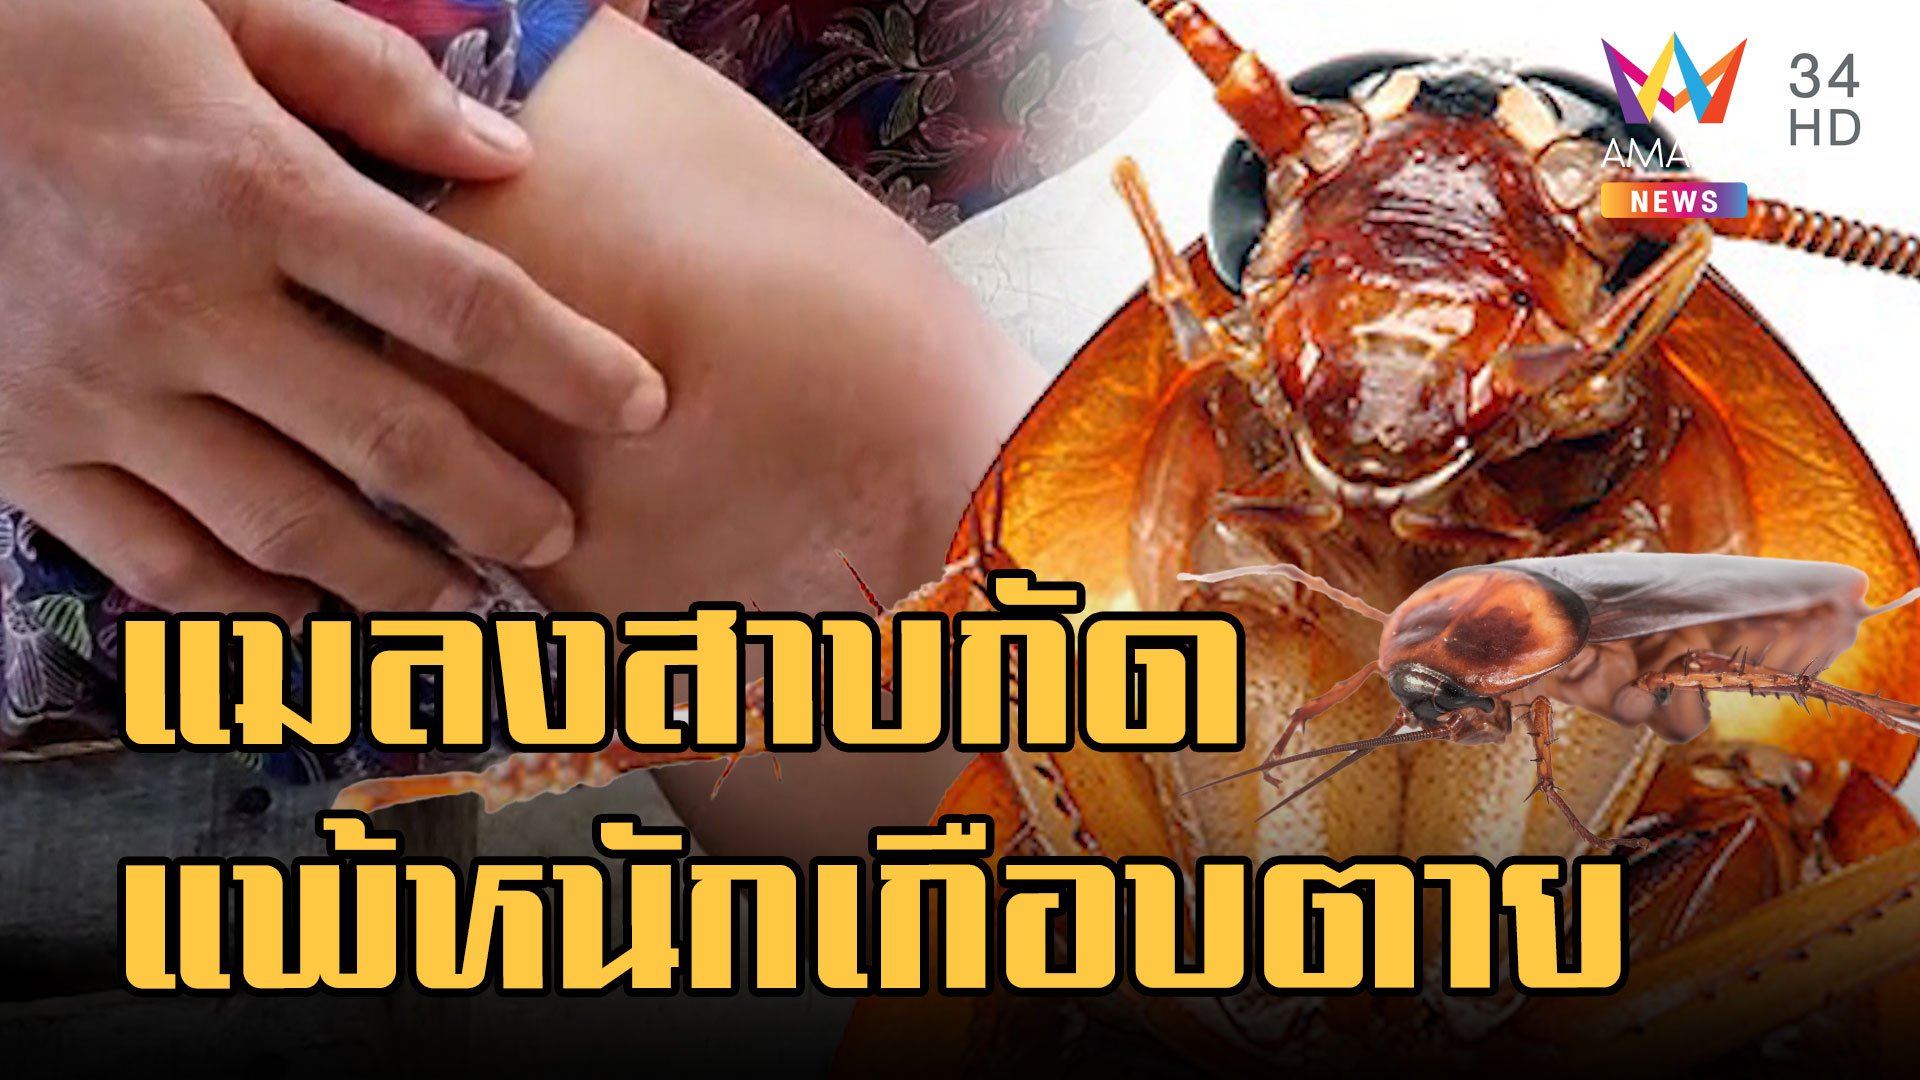 สาวพม่าถูกแมลงสาบกัด แพ้หนักเกือบตาย โทรแจ้งกู้ภัยยังไม่เชื่อ | ข่าวอรุณอมรินทร์ | 6 ก.ย. 65 | AMARIN TVHD34